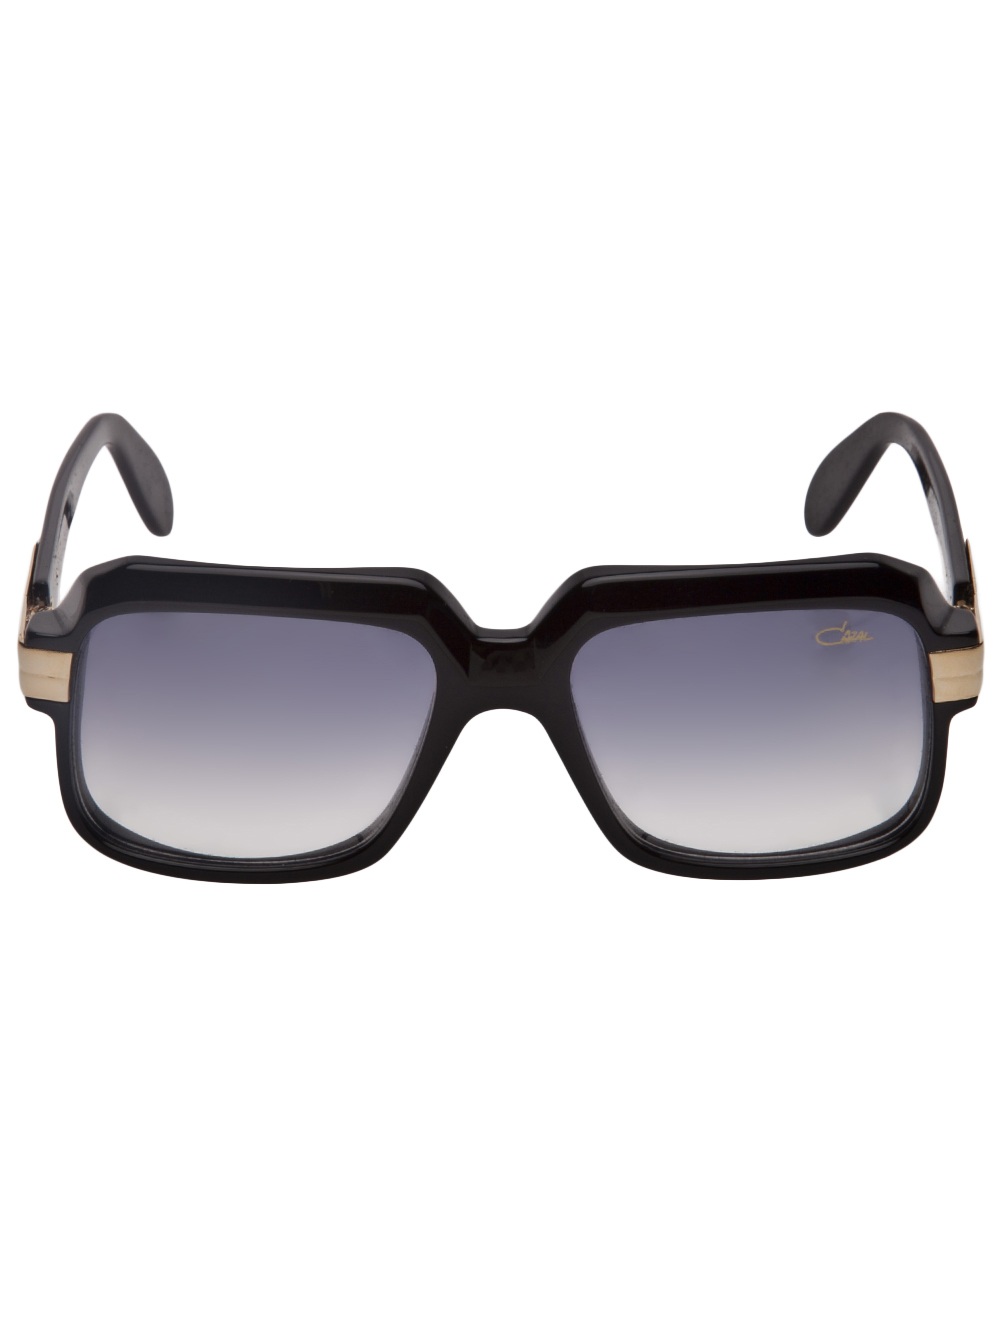 Cazal Vintage 607 Sunglasses In Black For Men Lyst